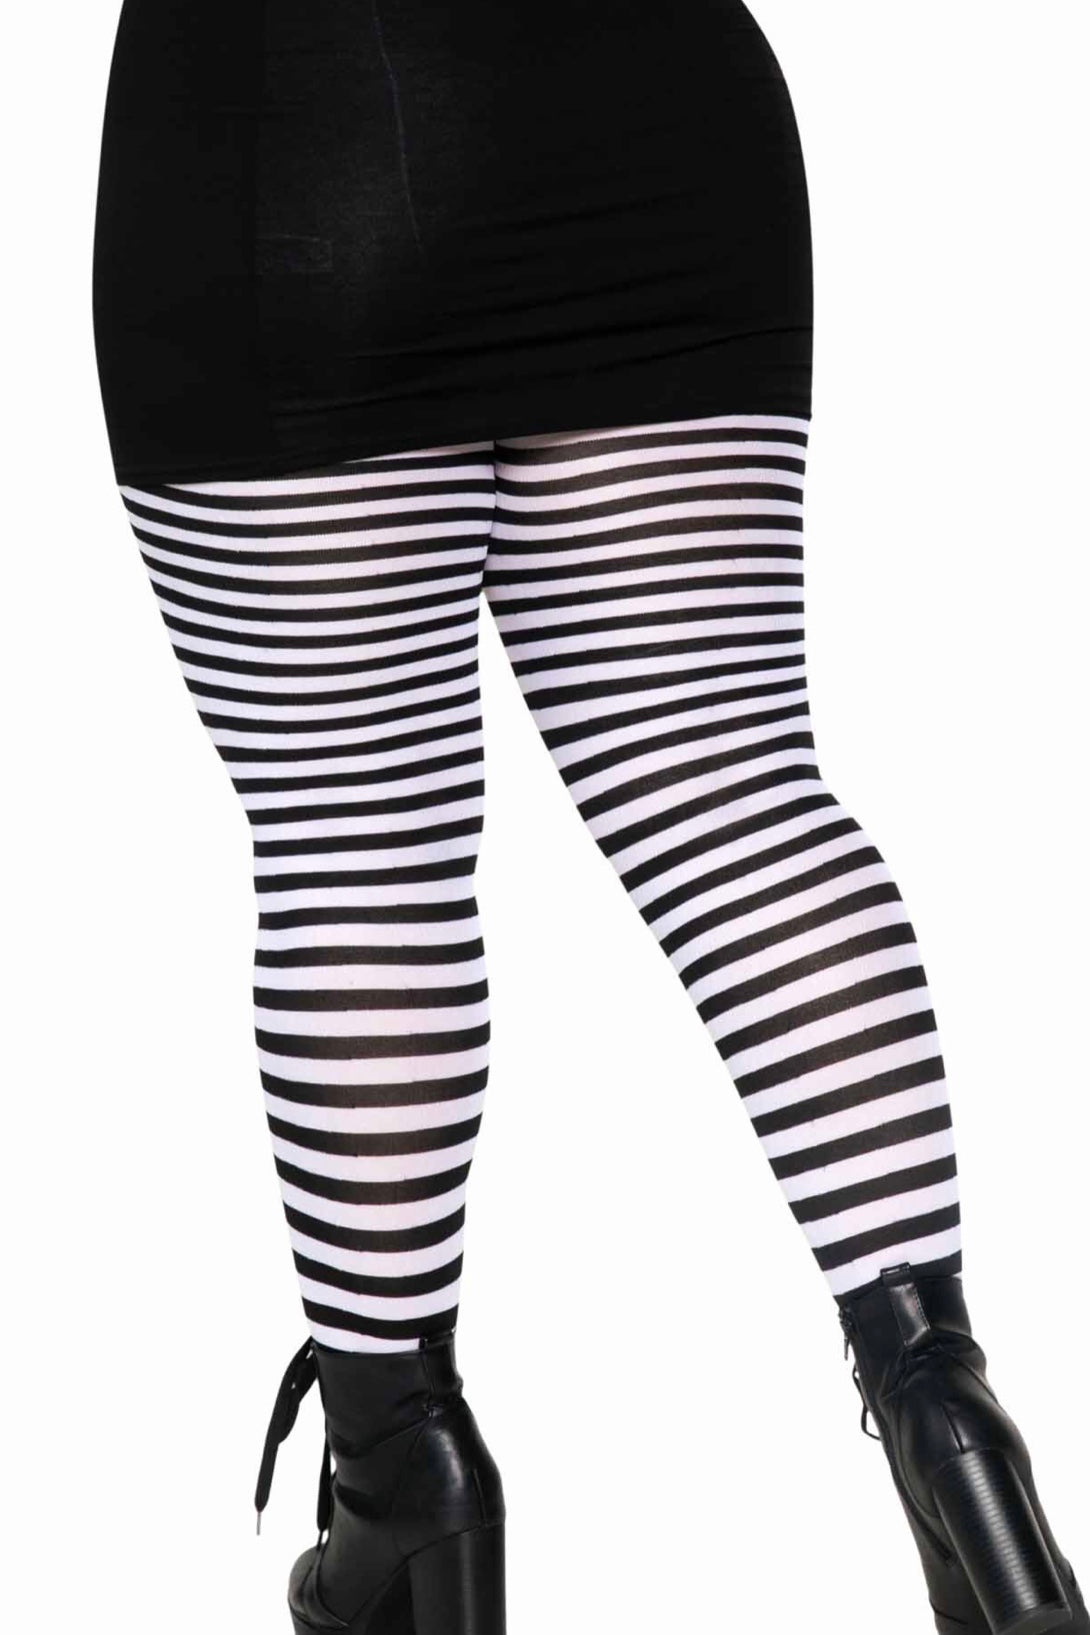 Striped tights - CurvynBeautiful 